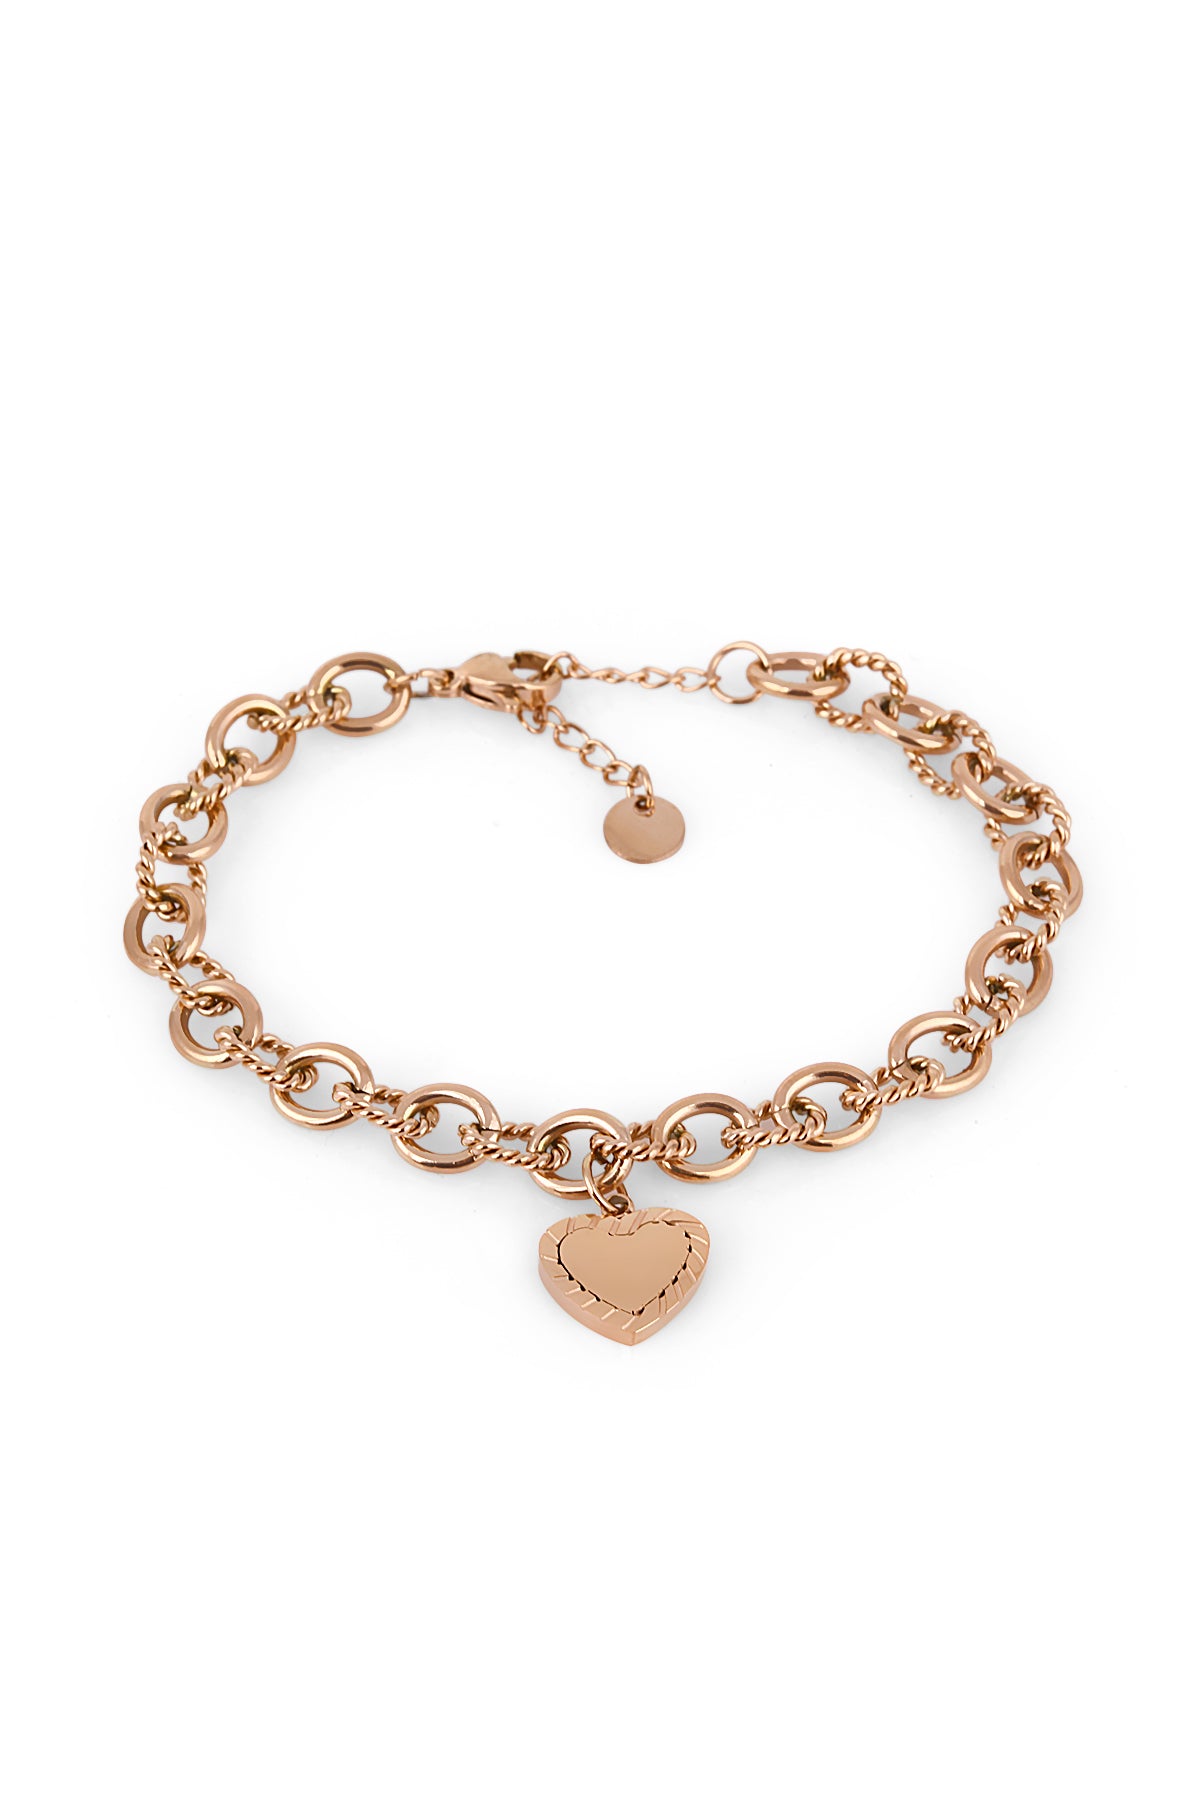 8MM Diamond Heart Shaped Bracelet in 14k Rose Gold – Rocco's Jewelry